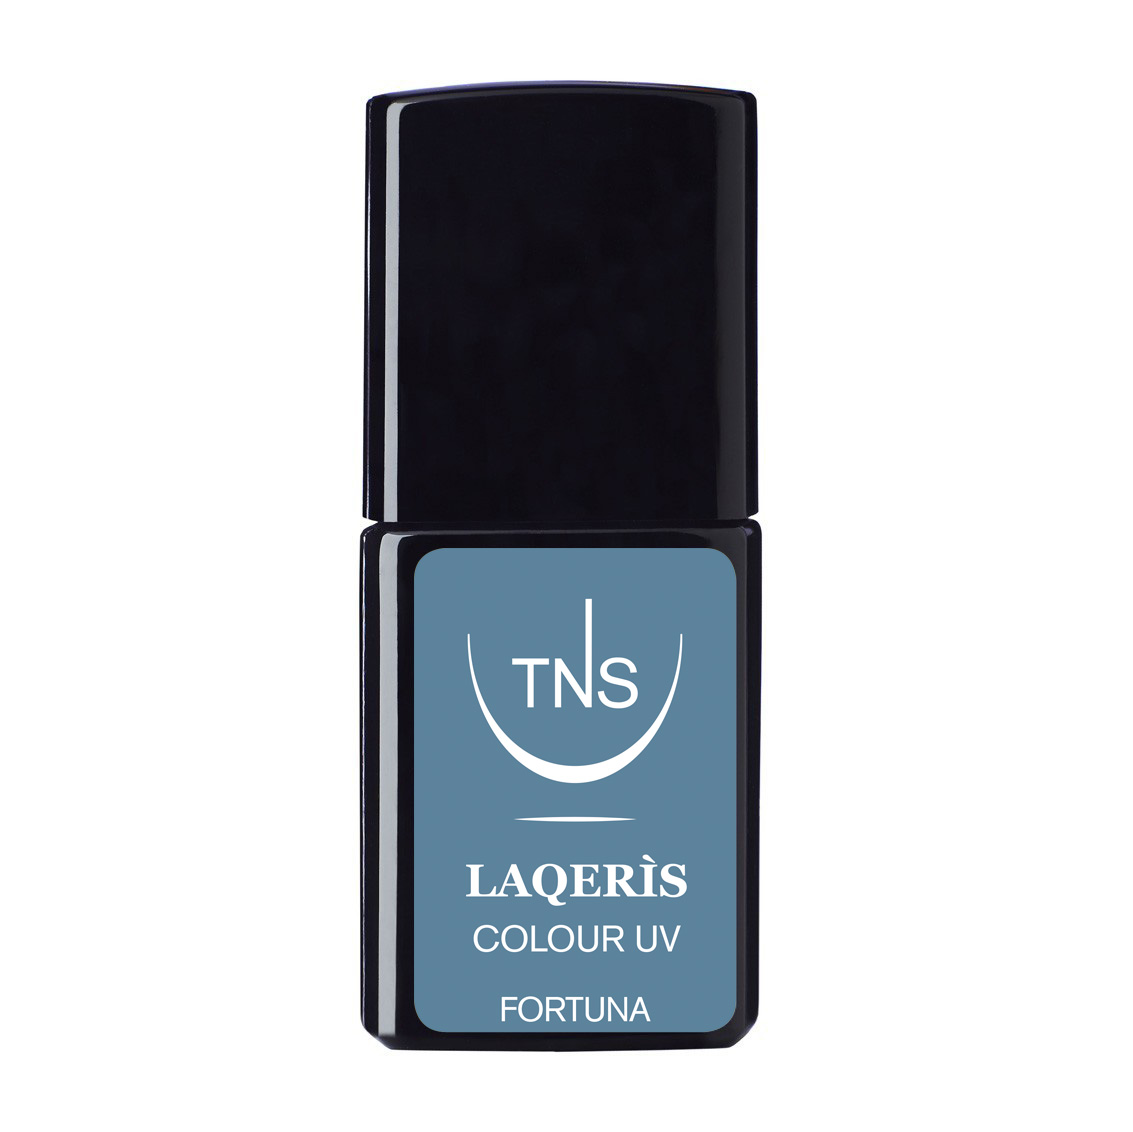 Semi-permanent nail polish baby blue Fortuna 10 ml Laqerìs TNS